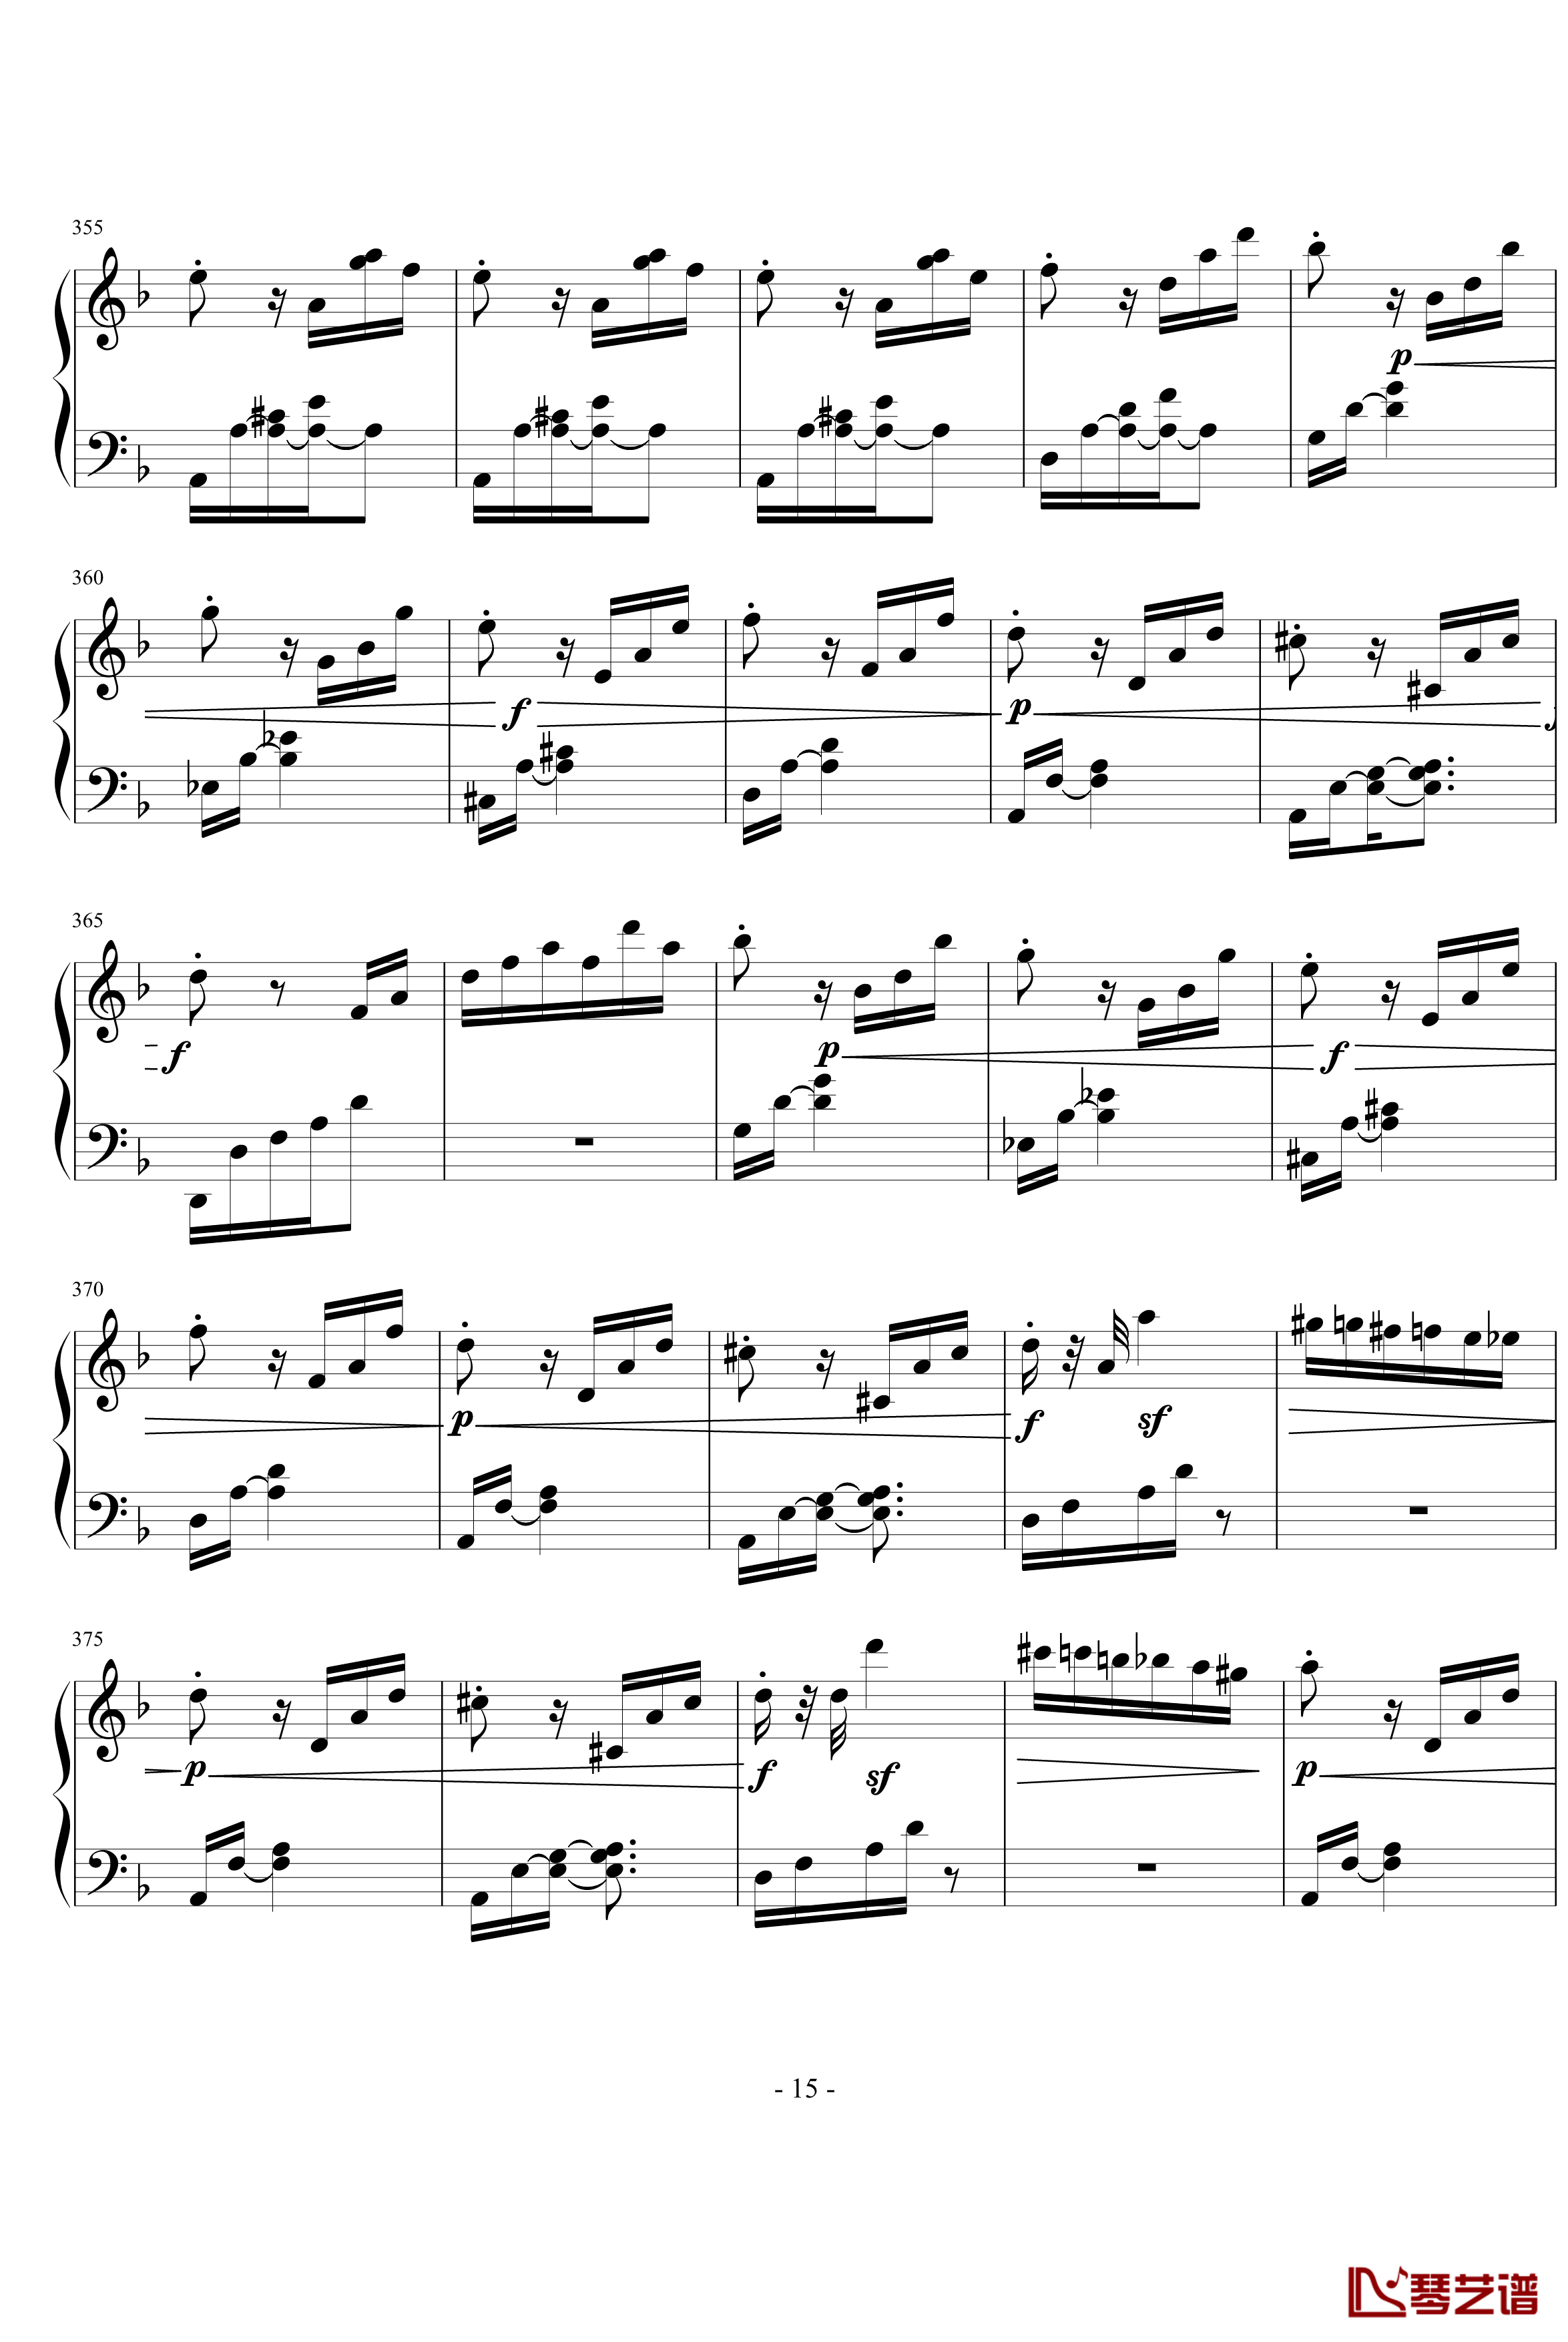 暴风雨第三乐章钢琴谱-贝多芬-beethoven15